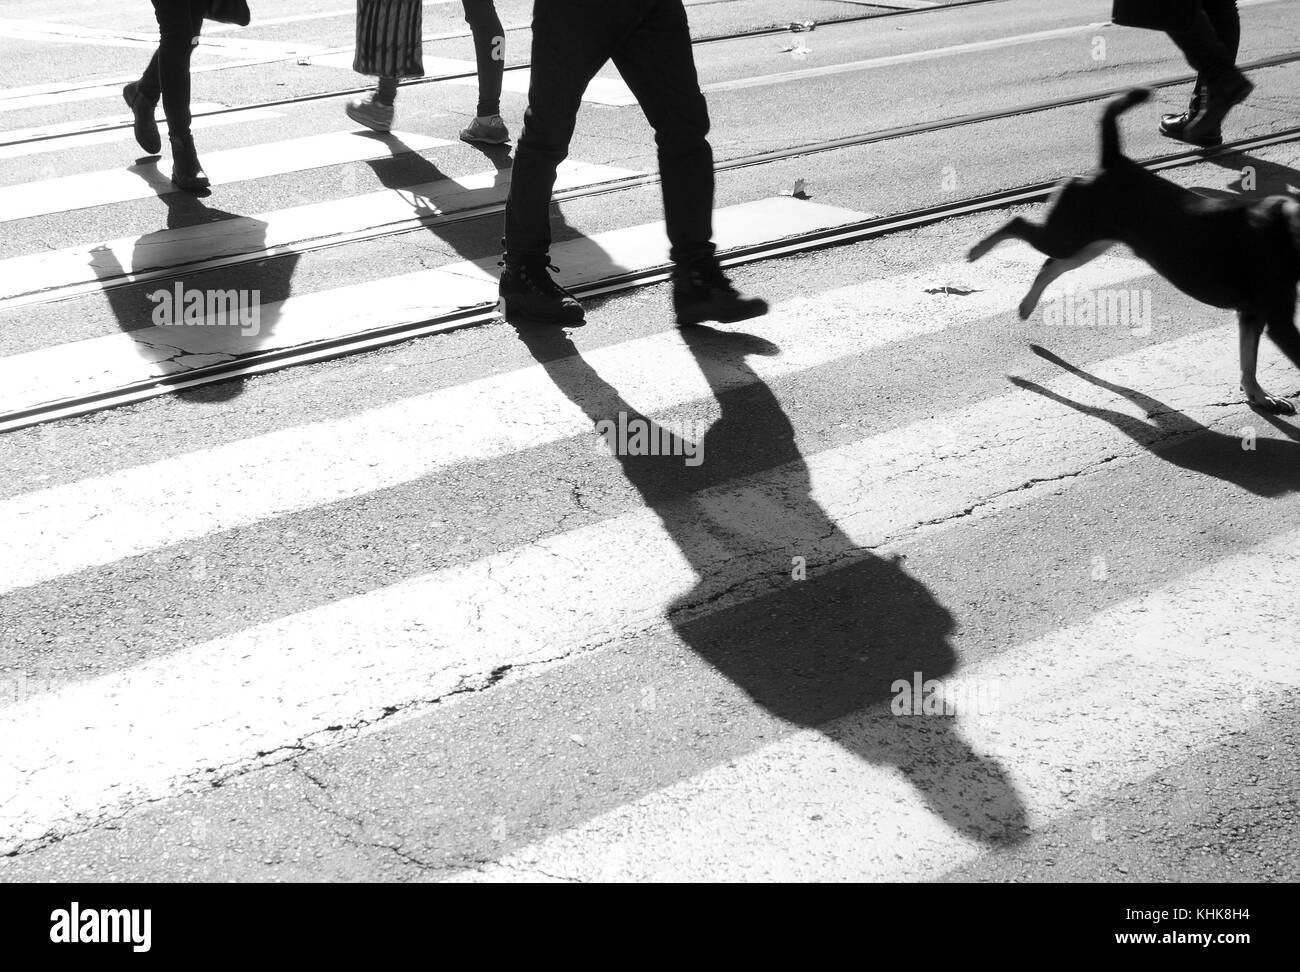 Zebrastreifen mit Schatten und Silhouetten, die laufen und ein Hund in motion blur Überqueren der Straße in Schwarz und Weiß Stockfoto